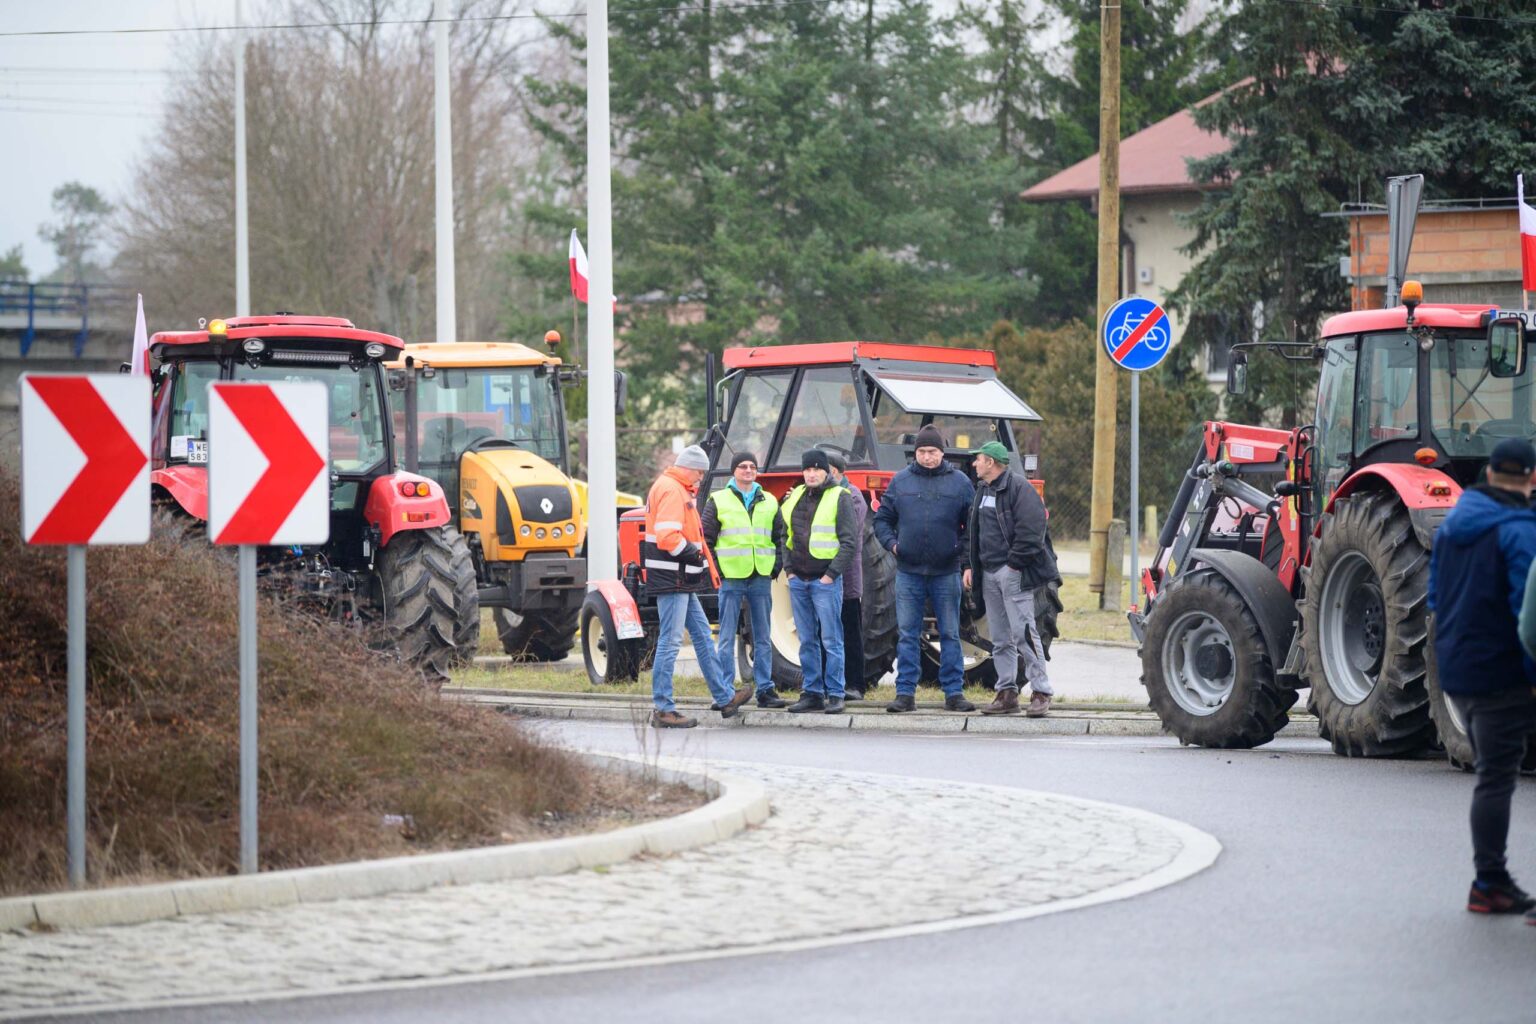 Protest rolniczy w Poddebicach i spotkanie z Wojewoda 46